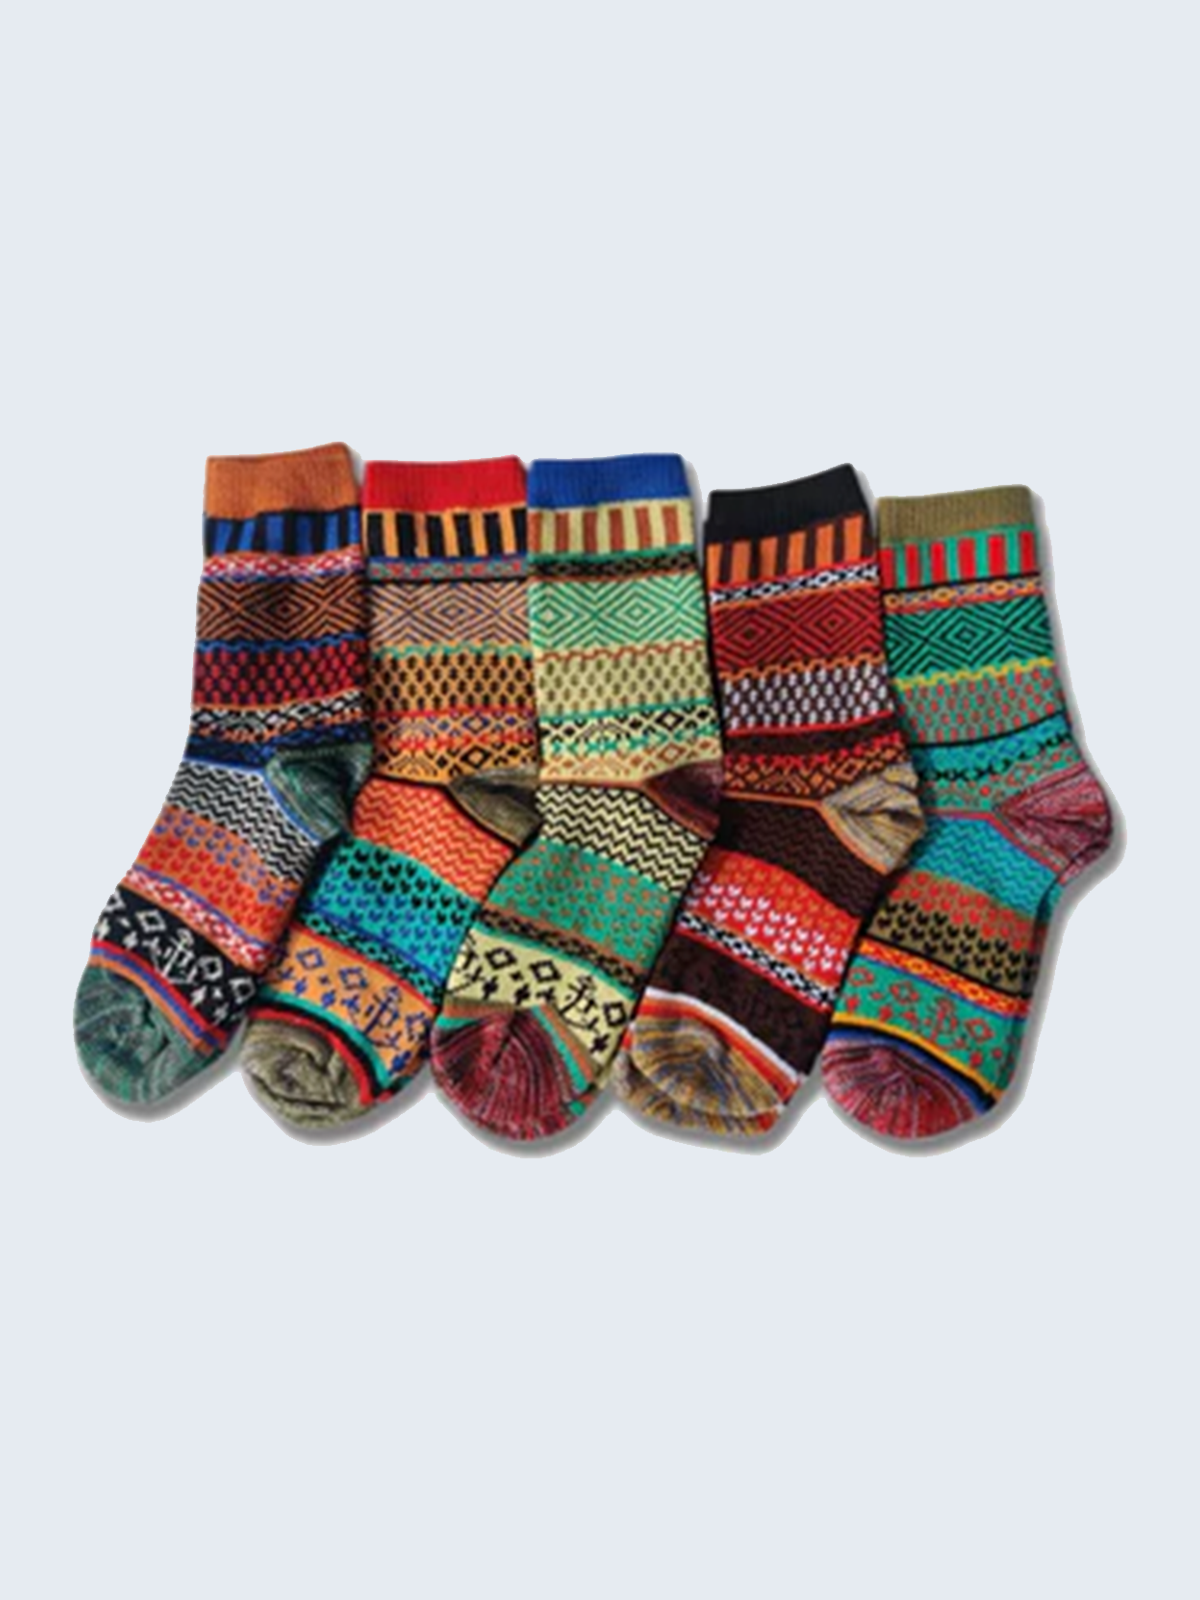 5 Pairs of Multicolor Wool Socks